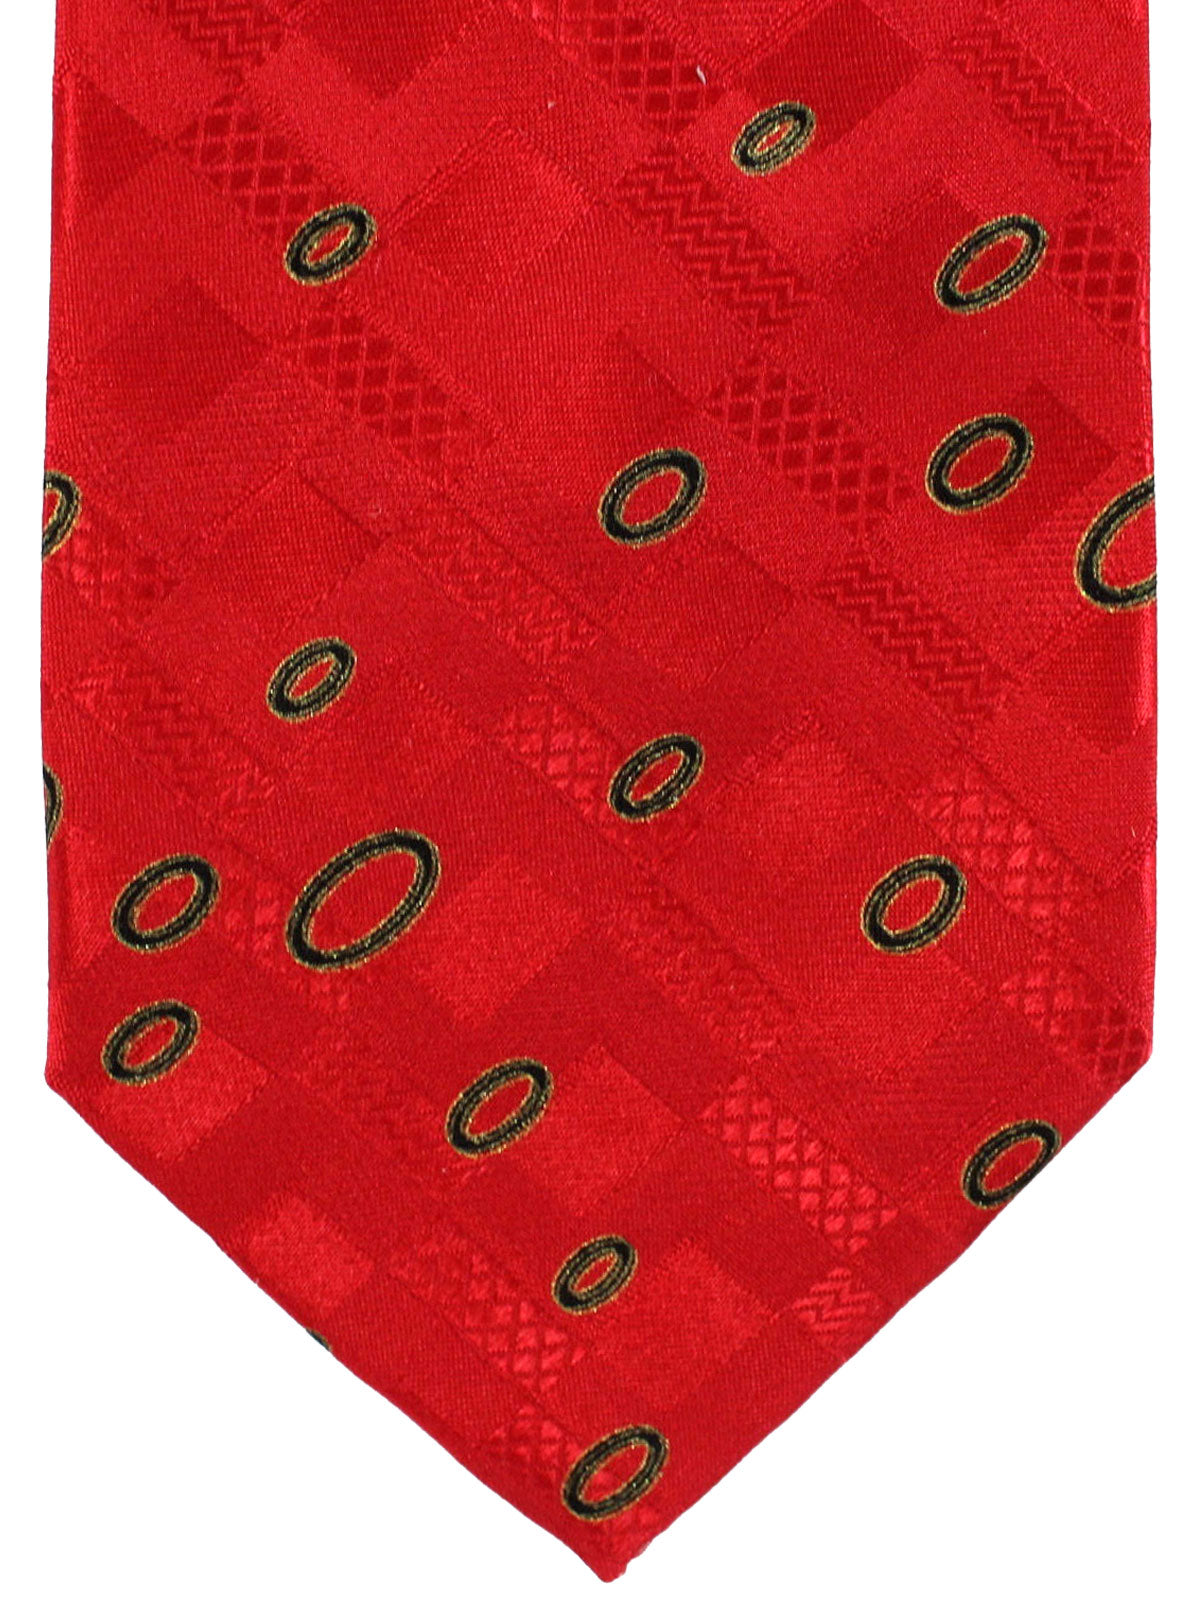 Brioni Silk Tie Red Geometric